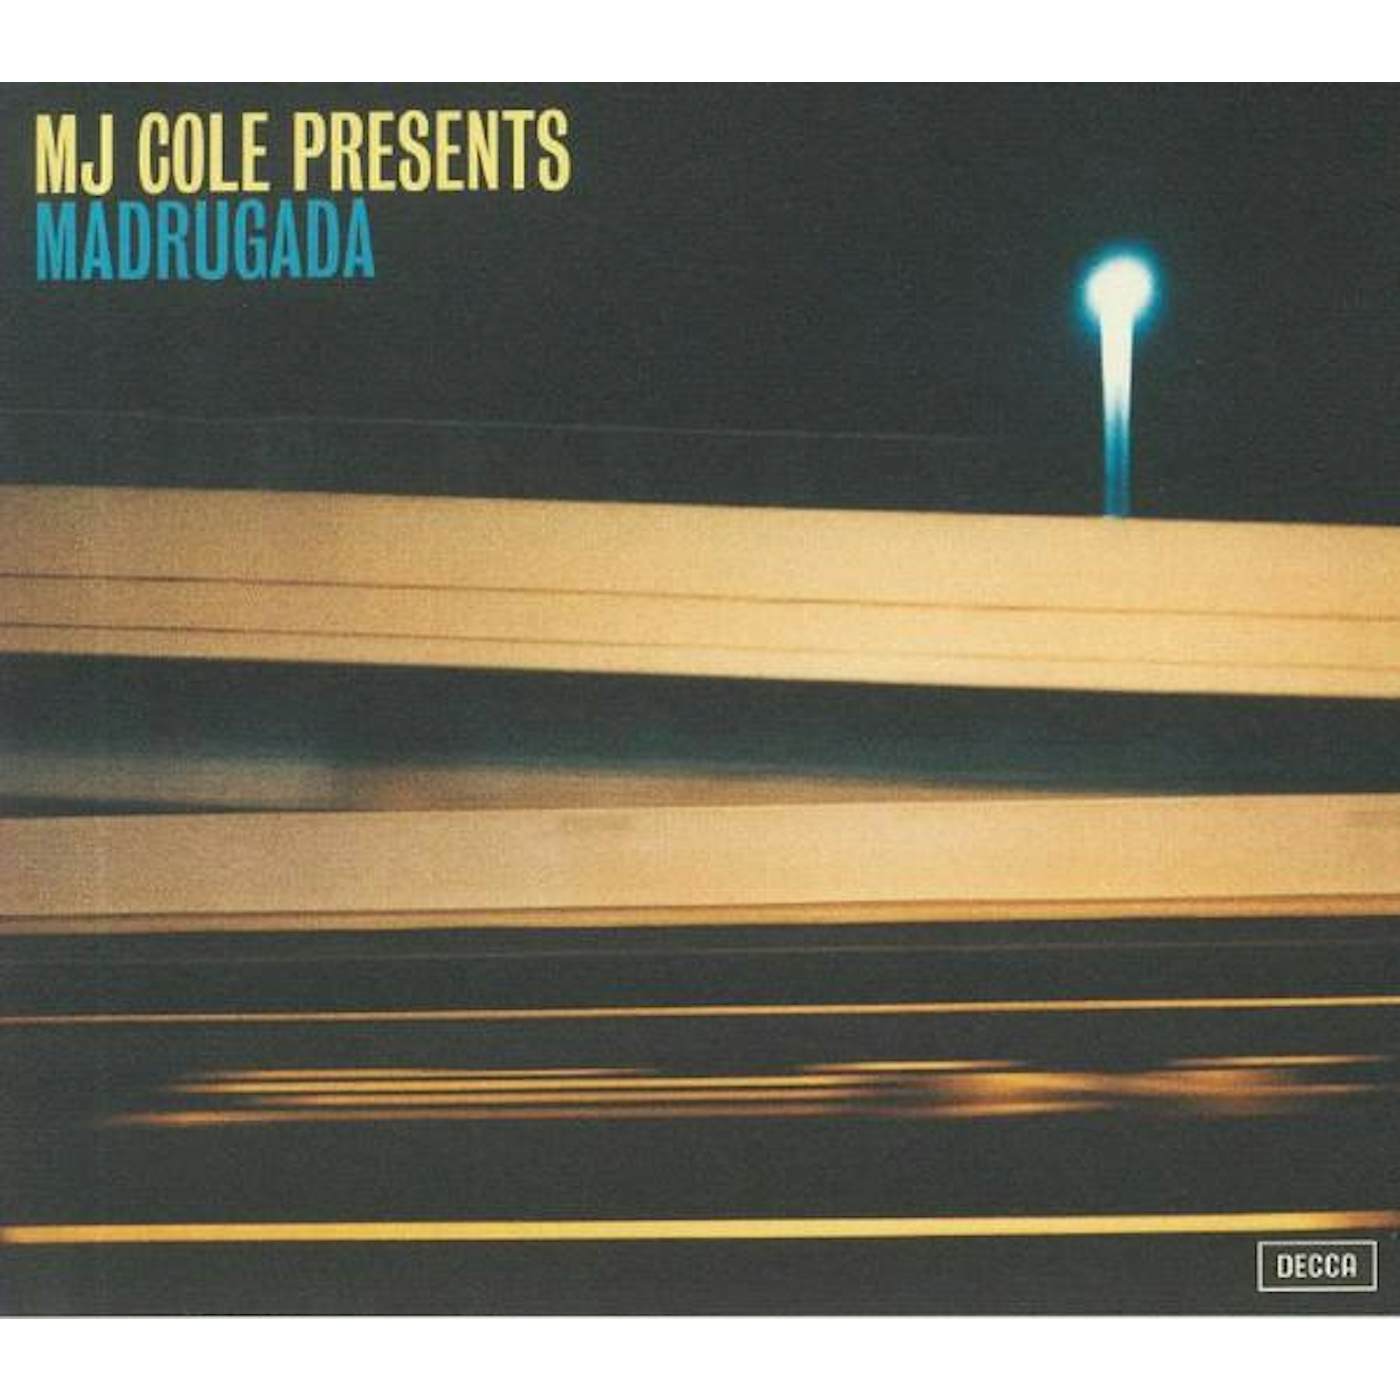 MJ COLE PRESENTS MADRUGADA CD